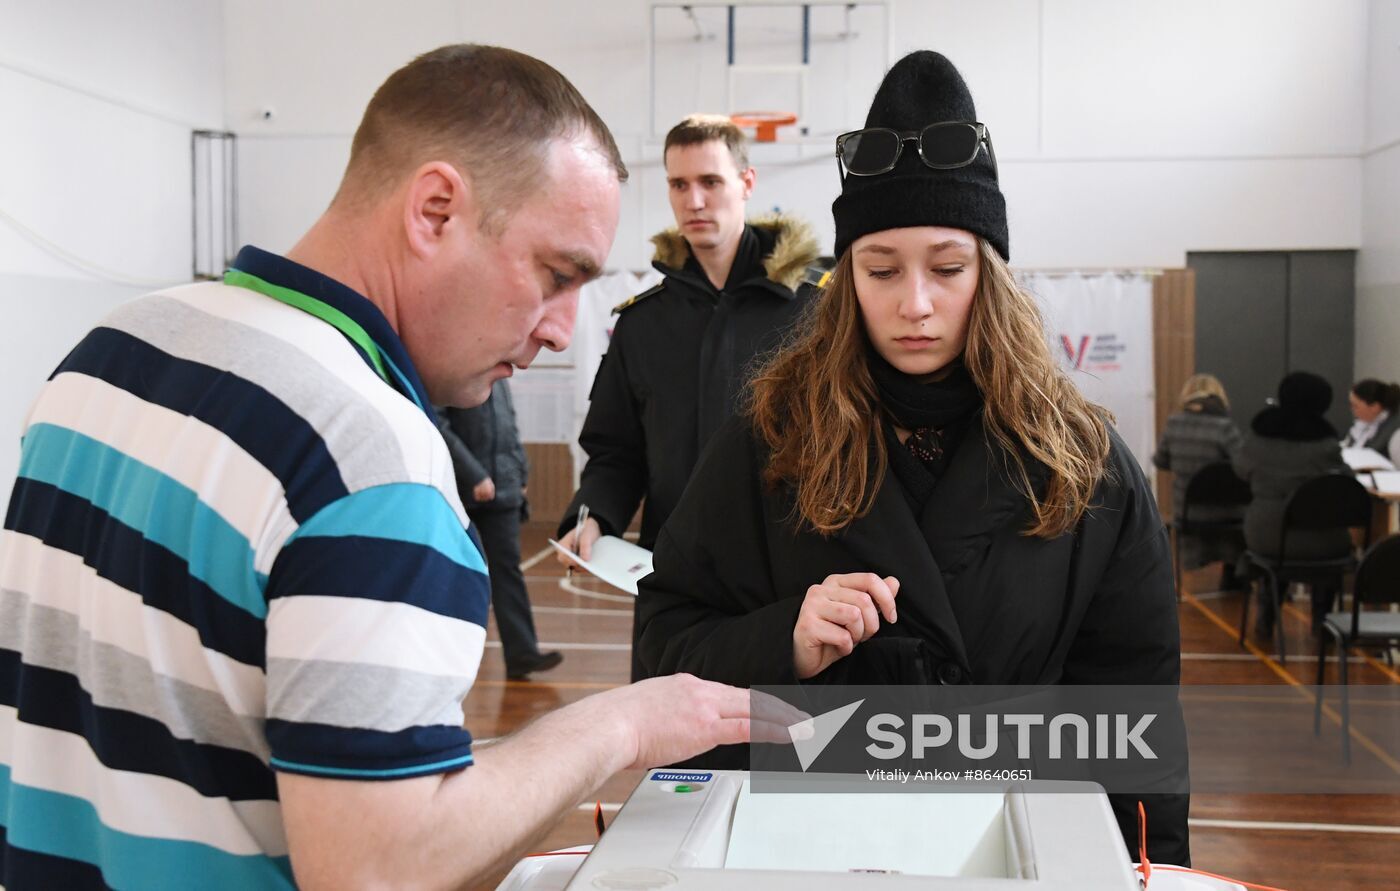 انتخابات غیرجدی روسیه (+ عکس) / اعتراض با ریختن رنگ در صندوق رای / گام پوتین برای دوره پنجم ریاست / 3 کاندیدا کیستند؟